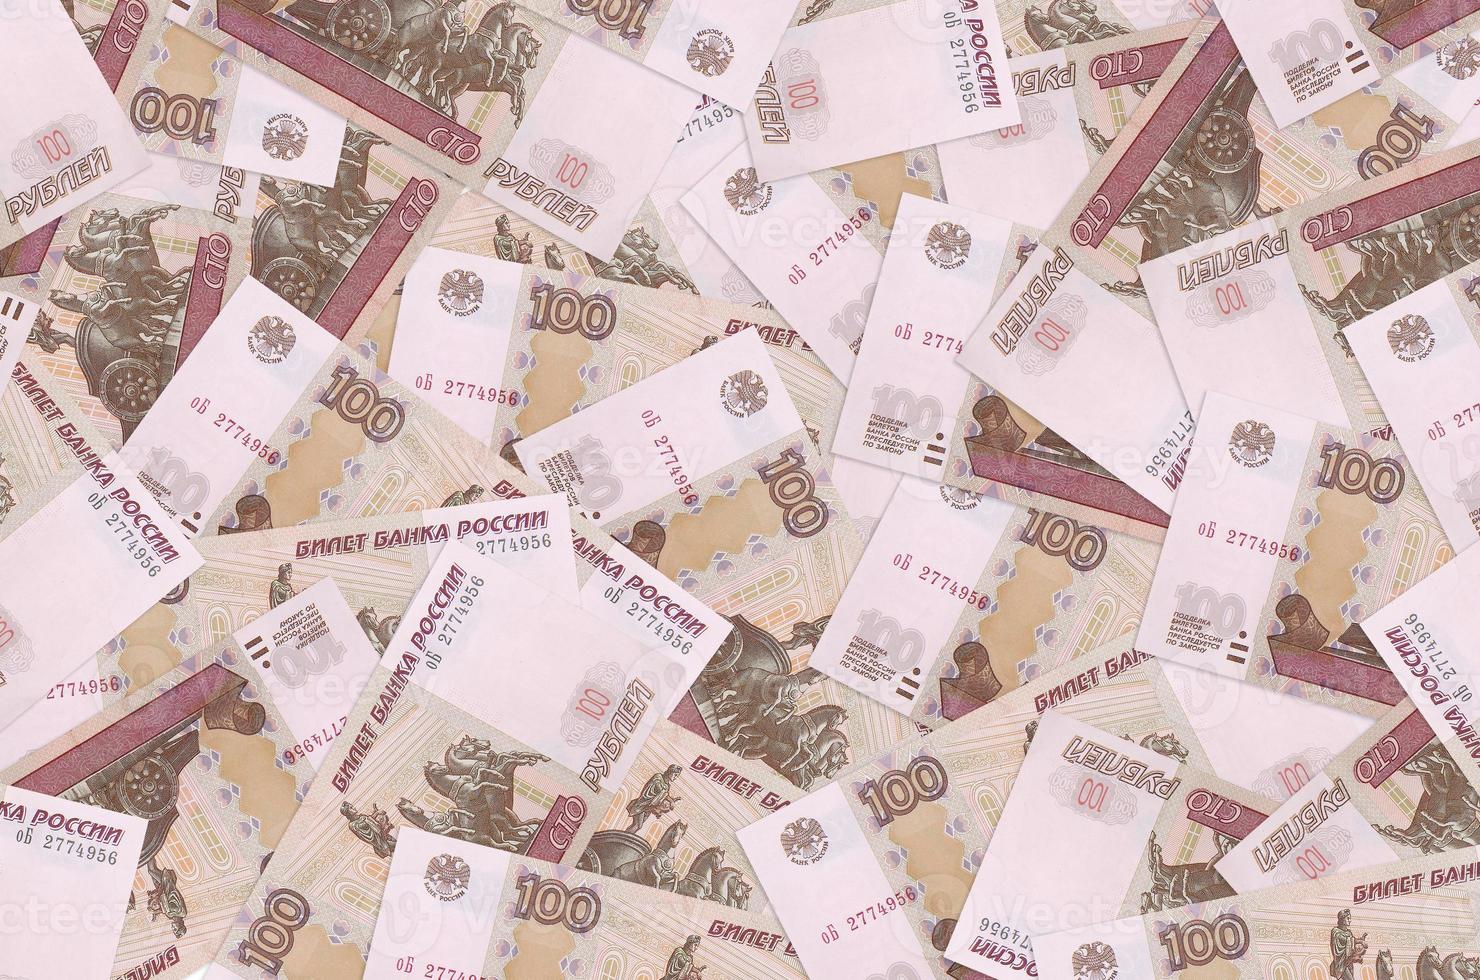 100 billets de roubles russes se trouvent en gros tas. contexte conceptuel de la vie riche photo